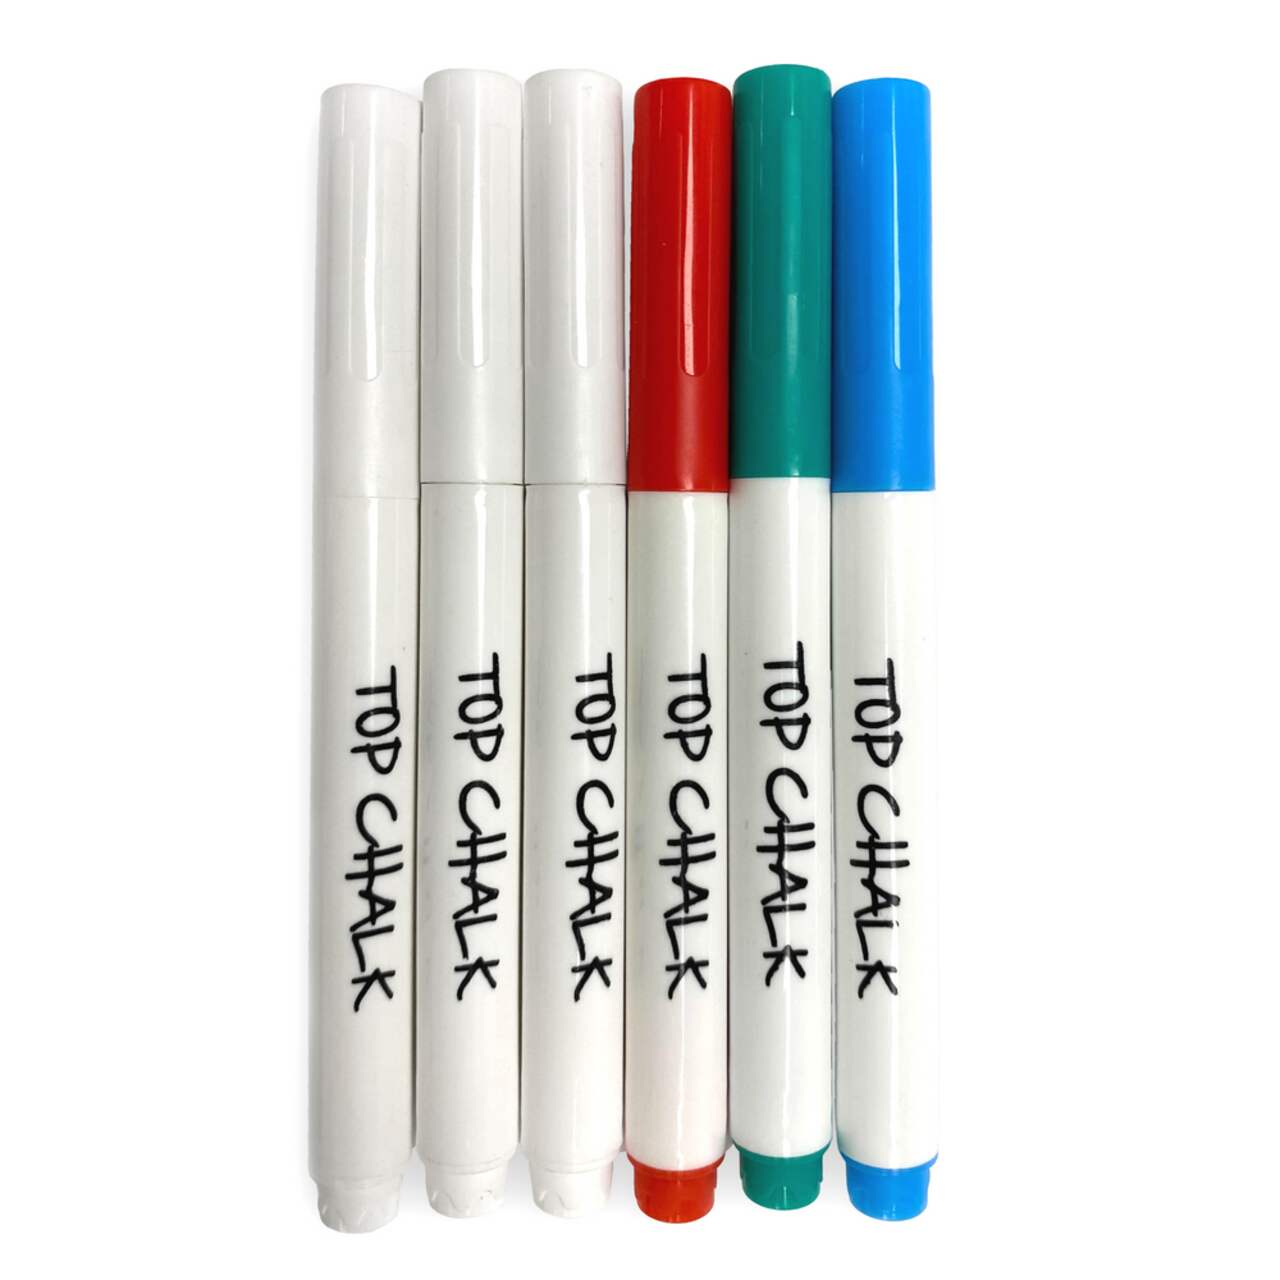 8 stylos à craie liquide couleurs vives. Accessoire écriture tableau